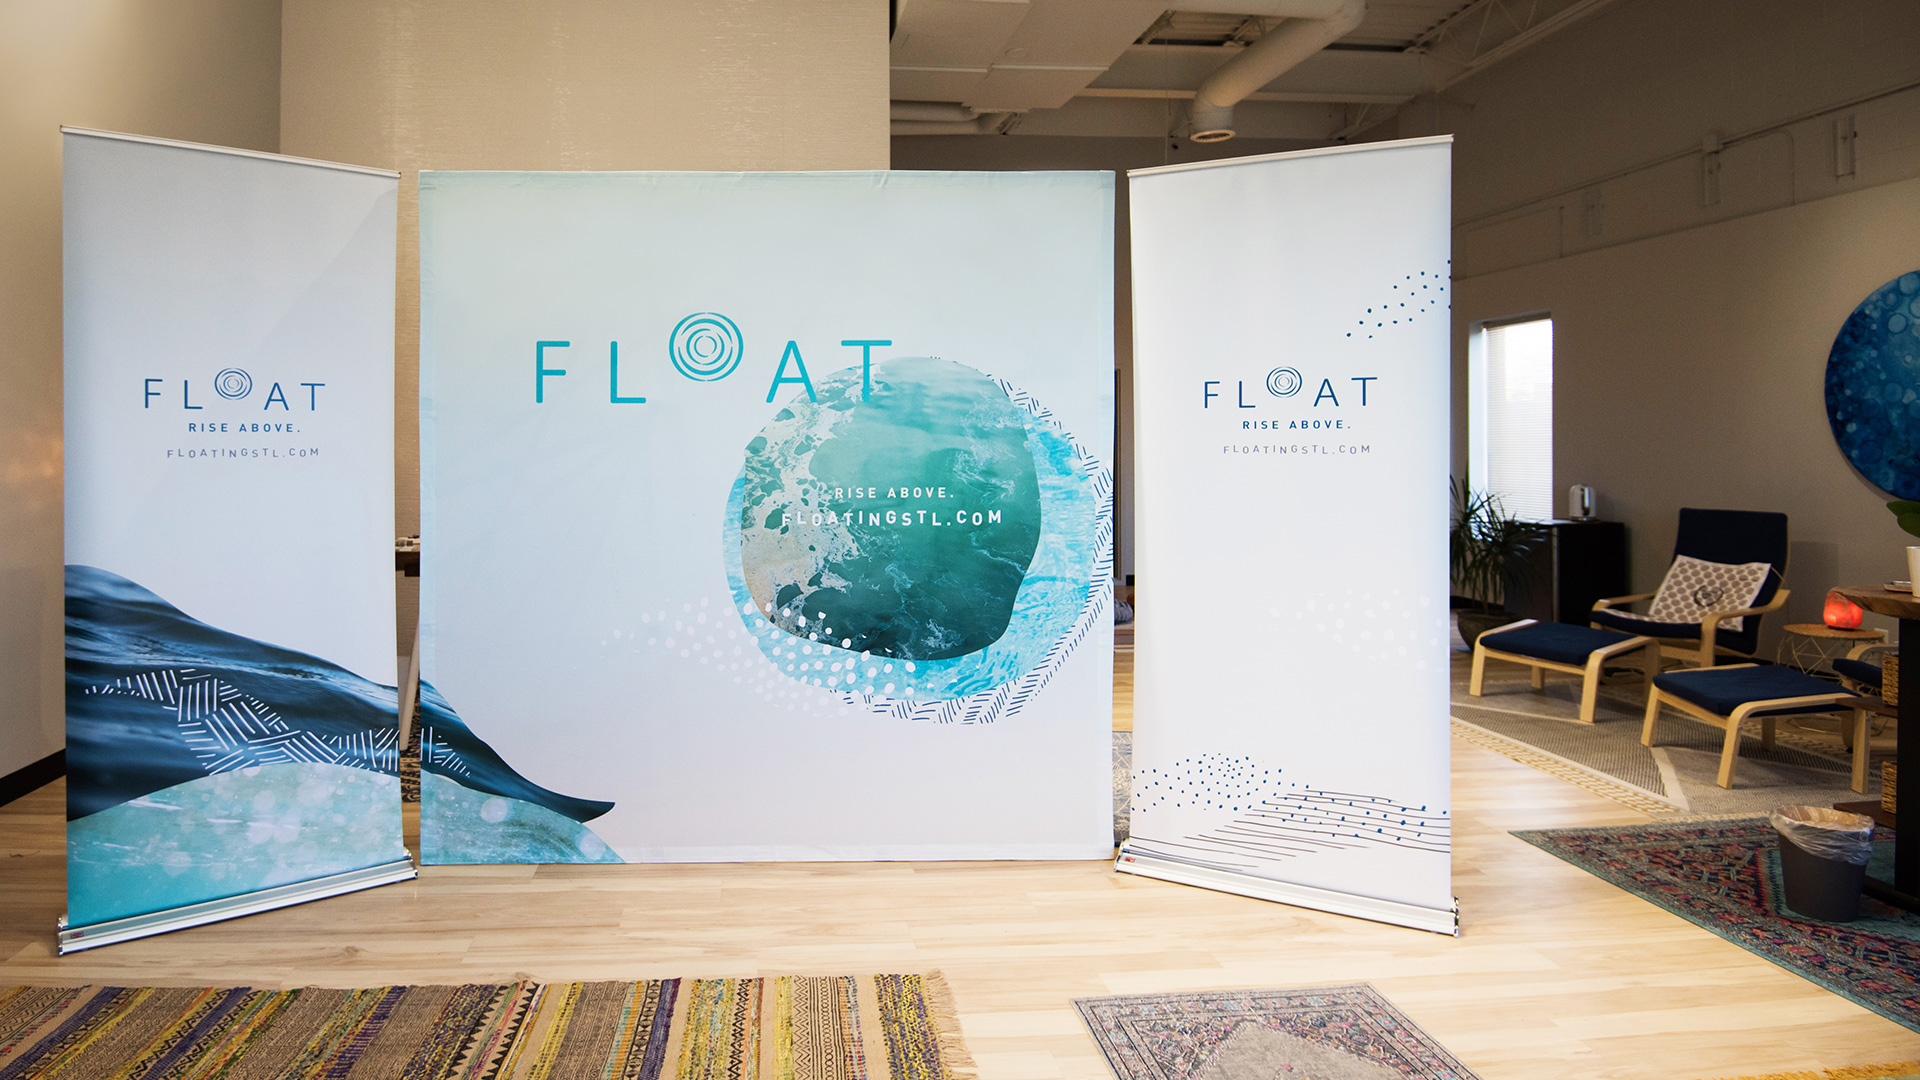 Pop up banner displays designs for FLOAT STL